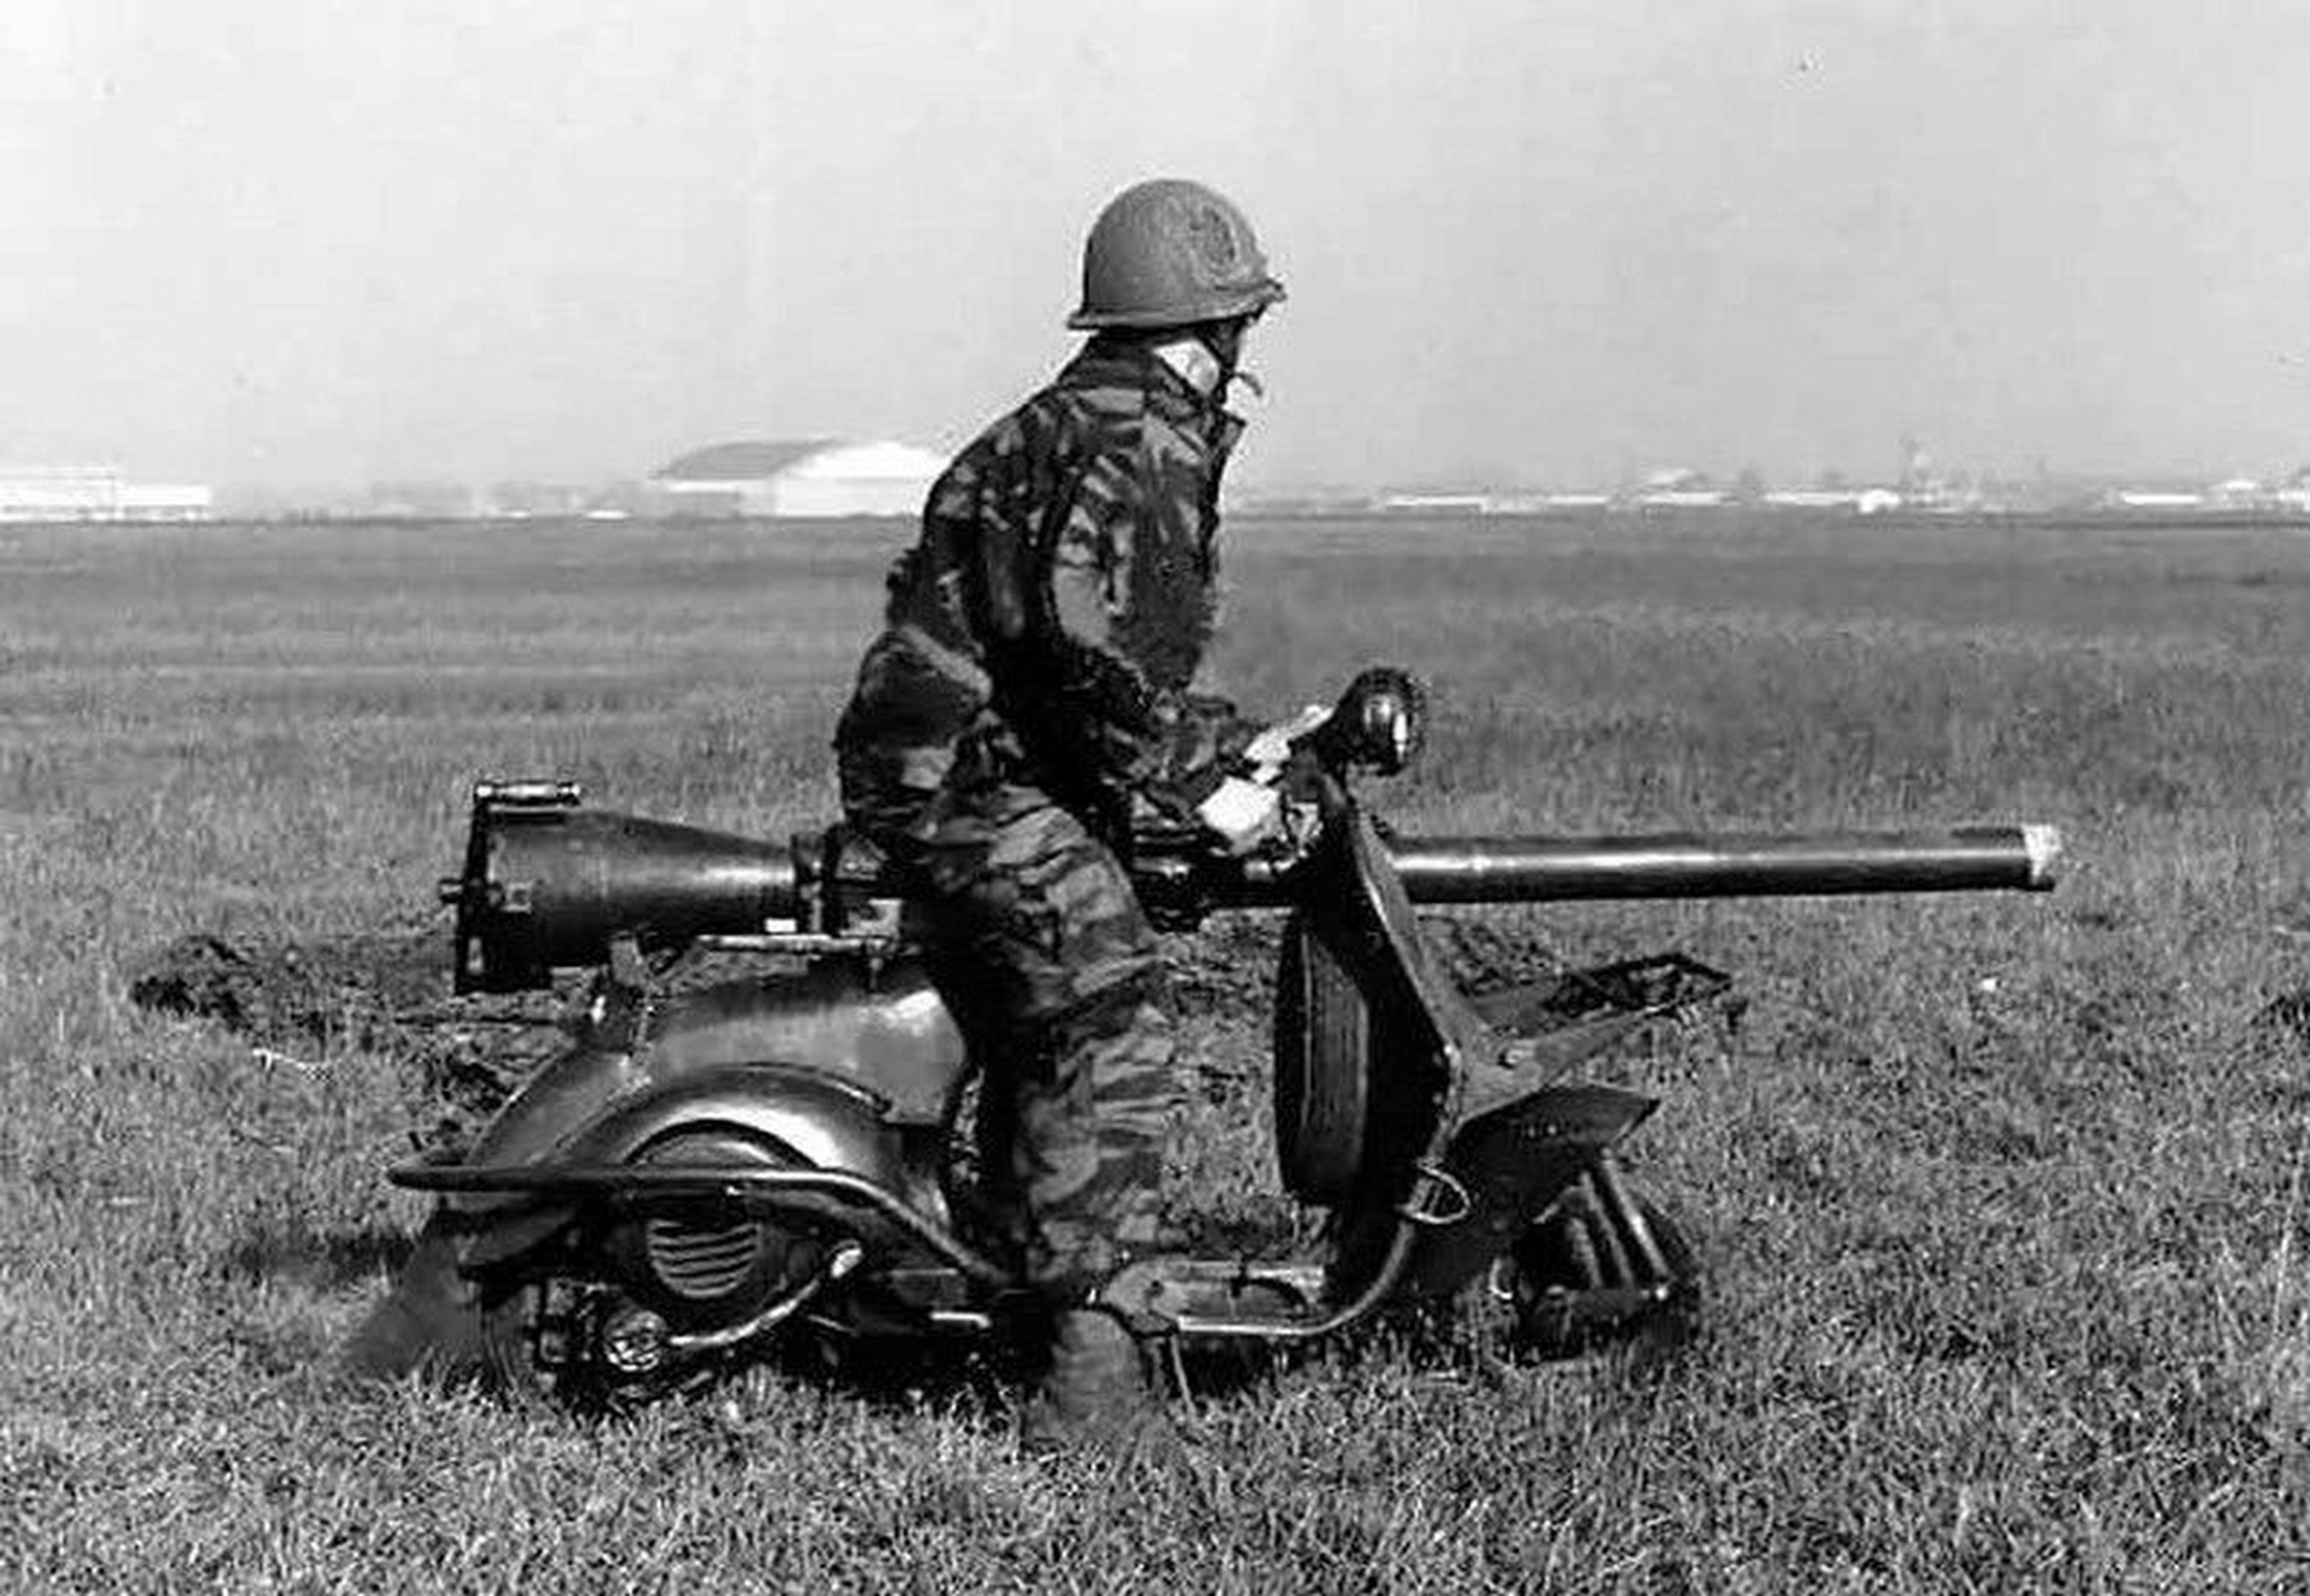 La curiosa historia de la Vespa con cañón que se lanzaba en paracaídas en los años 50